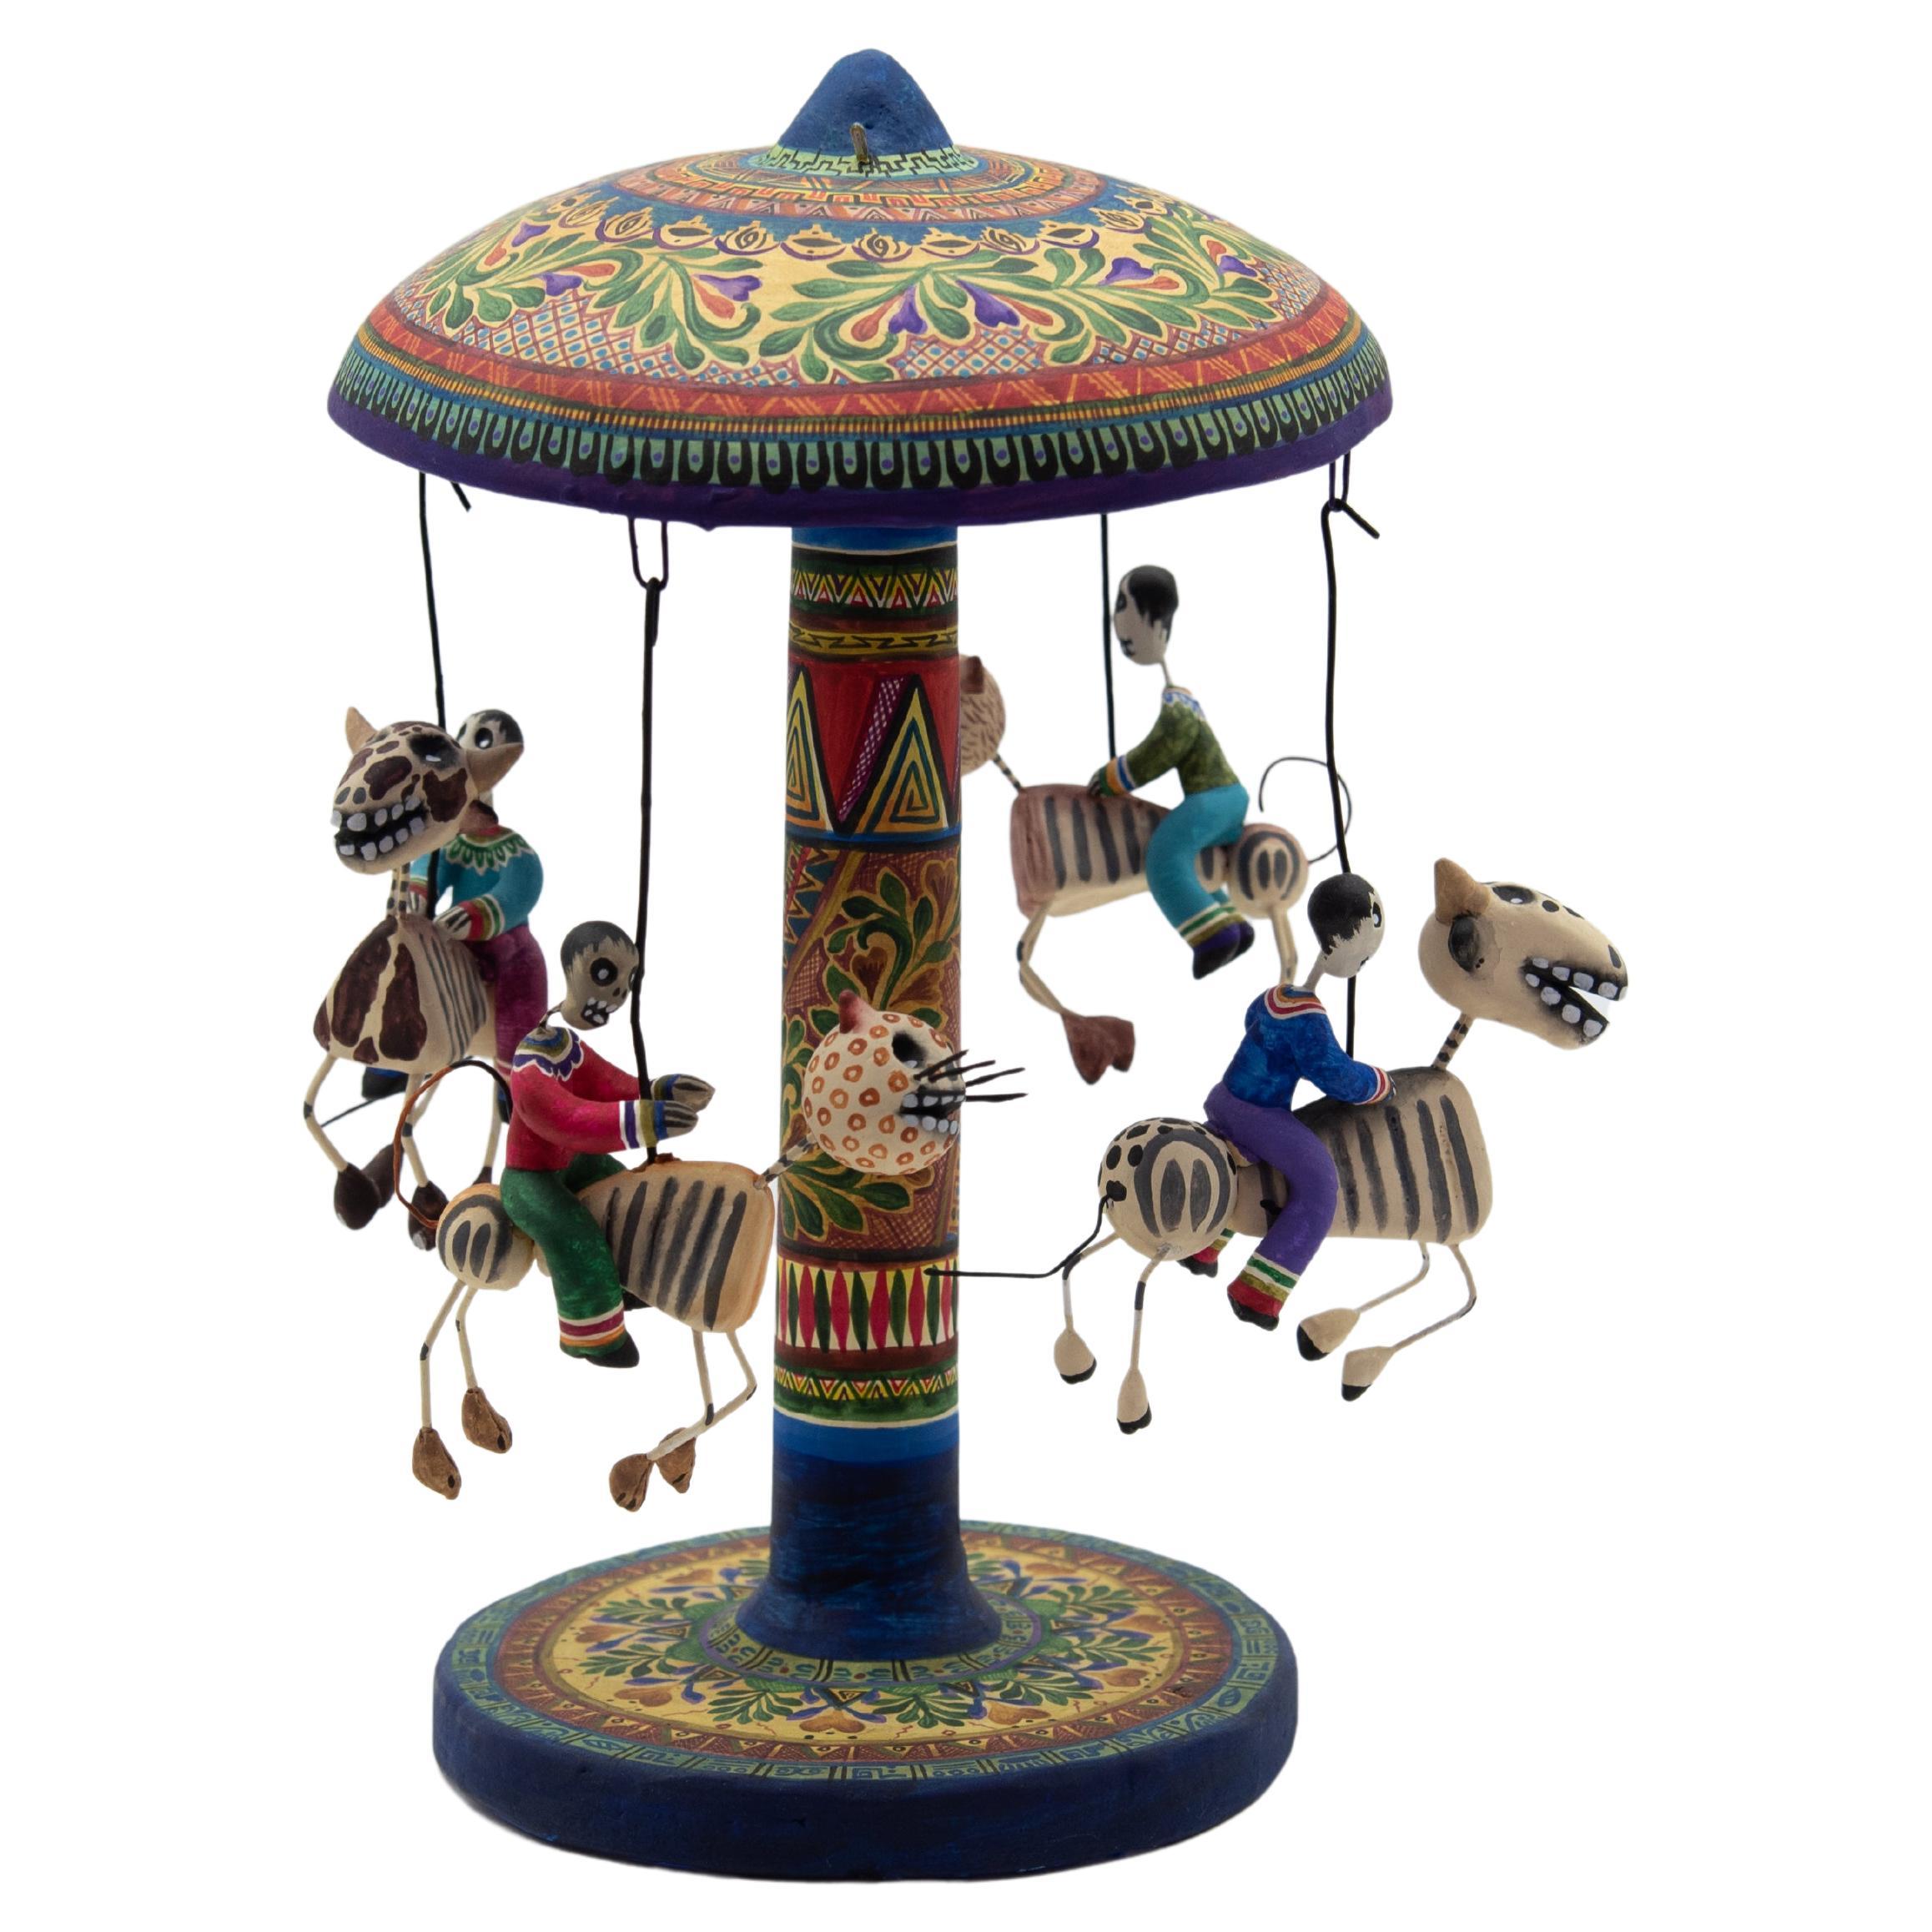 Carousel Day of the Dead Ceramic Mexican Folk Art by Familia Castillo 